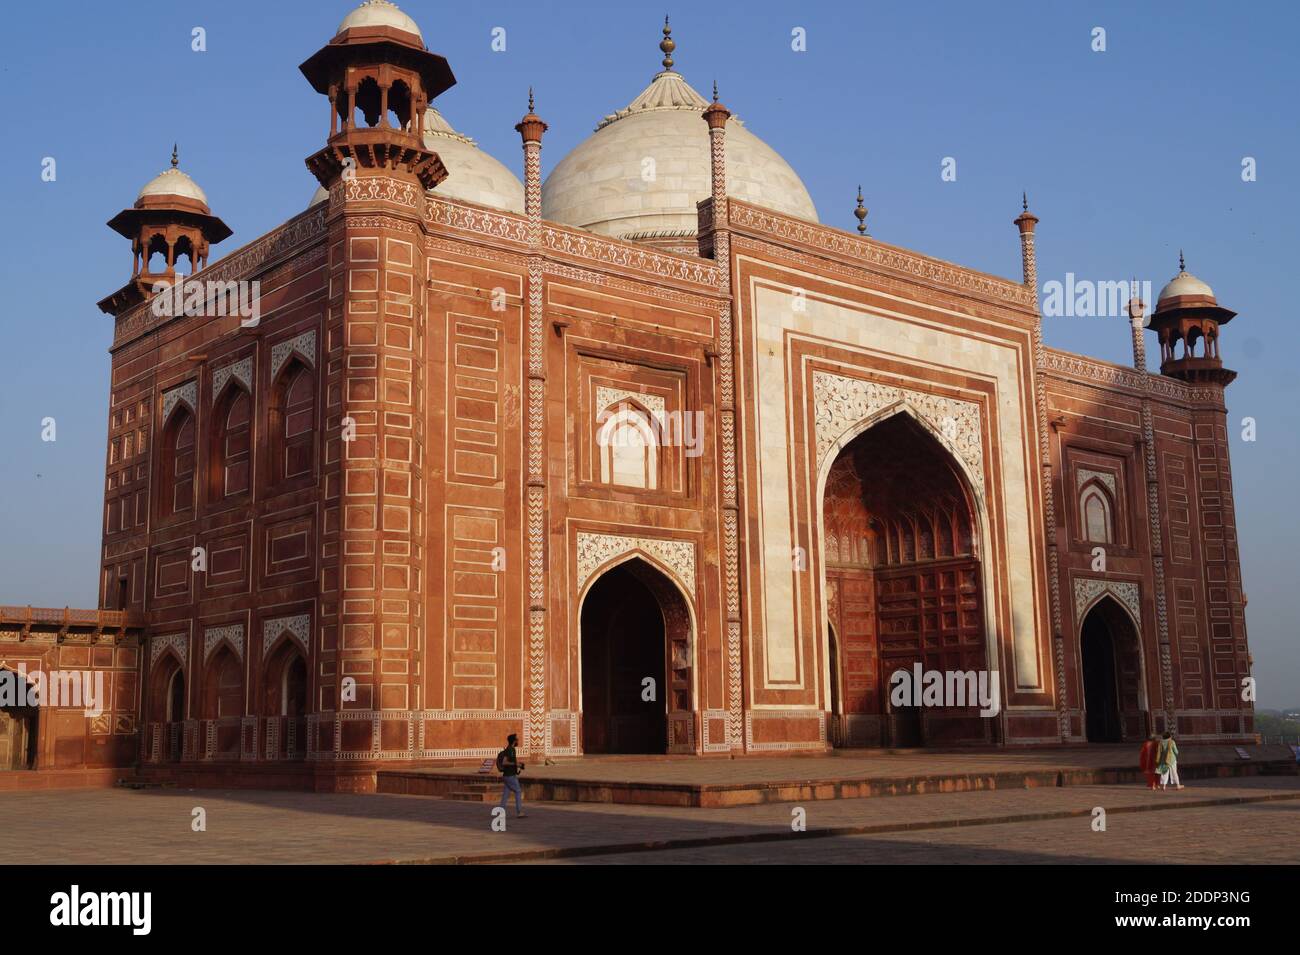 Taj Mahaj, Agra, India- meraviglia del mondo daaaaaaaaaaaaaaaaaaaaaaaaaaaaaaaaaaaaaaaaaaaaaaaaaaaaaaaaaaaaaaaaaaaaaaaaaaaaaaaaaaaaaaaaaaaaaaaaaaaaaaaaaaaaaaaaaaaaaaaaaaaaaaaaaaaaaaaaaaaaa Foto Stock